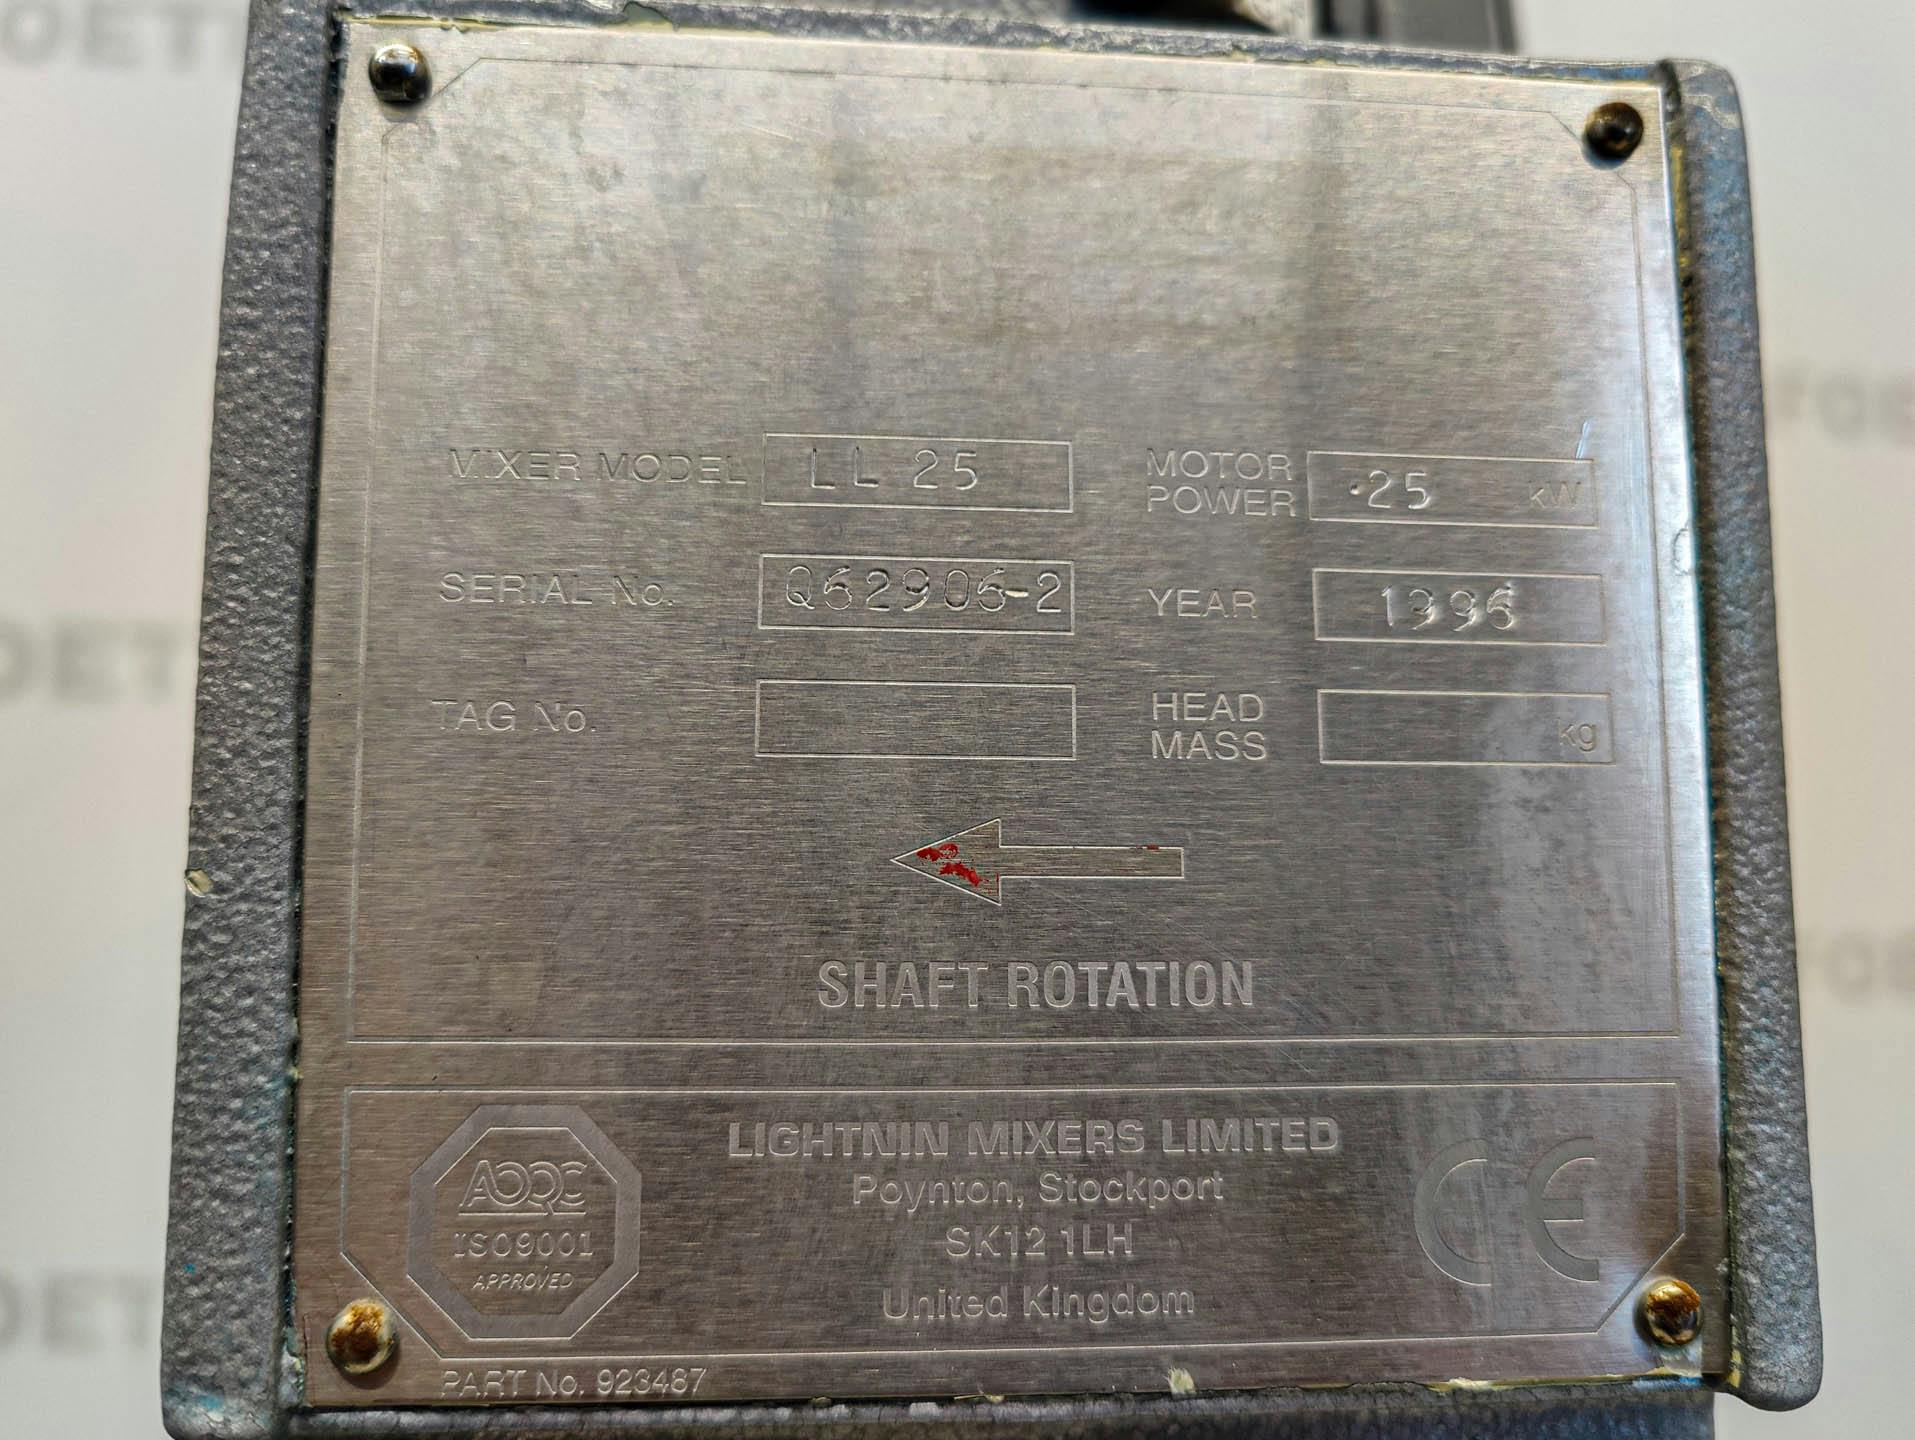 Northern fabrications 350 Ltr. - Tanque mezclador - image 5